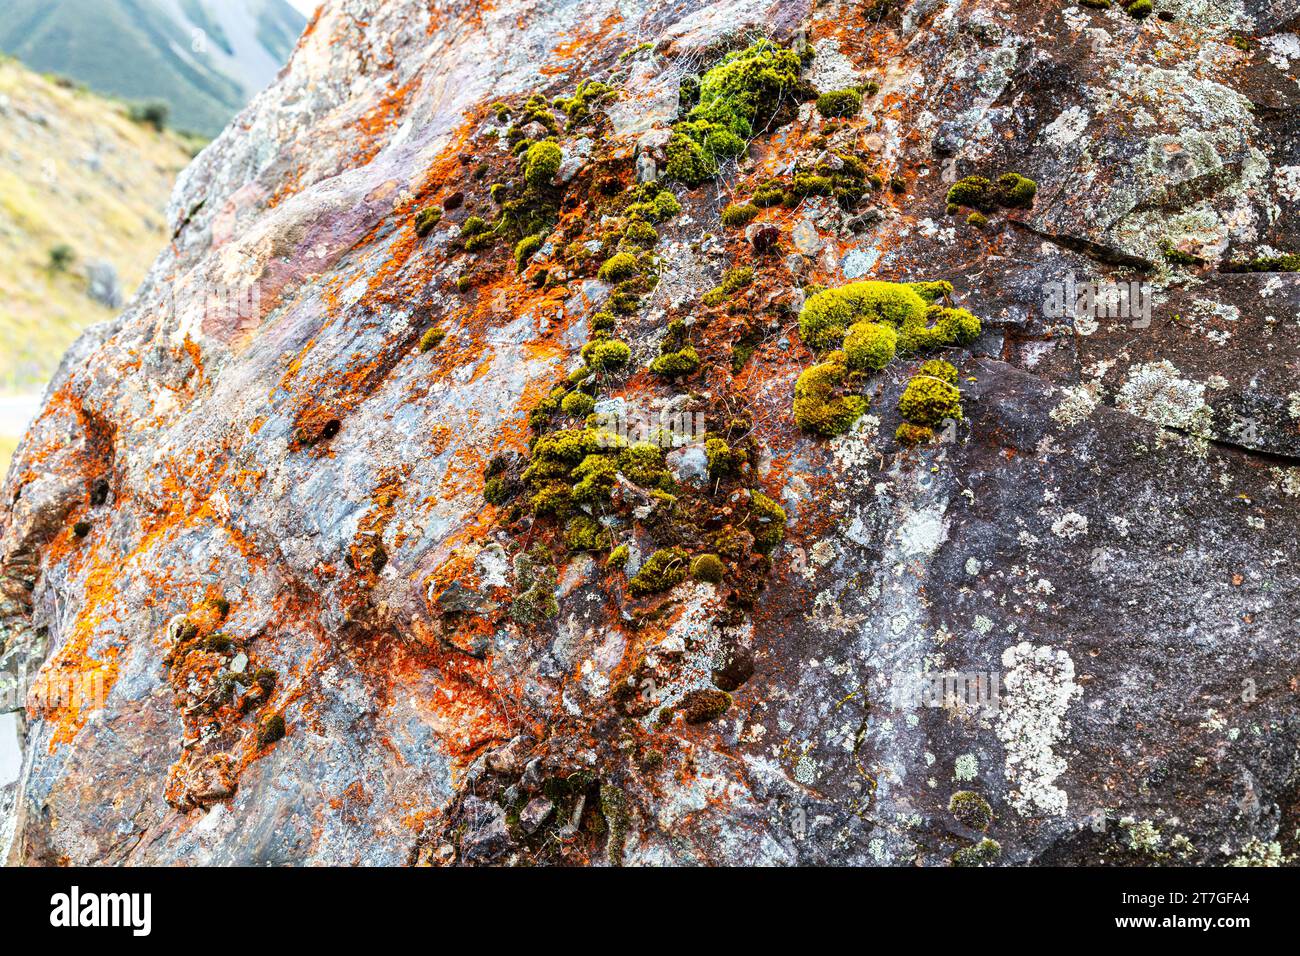 Les lichens sont des organismes symbiotiques composés de plusieurs espèces : un champignon, un ou plusieurs photobiontes et parfois une levure. Ils sont régulièrement regroupés par TH Banque D'Images